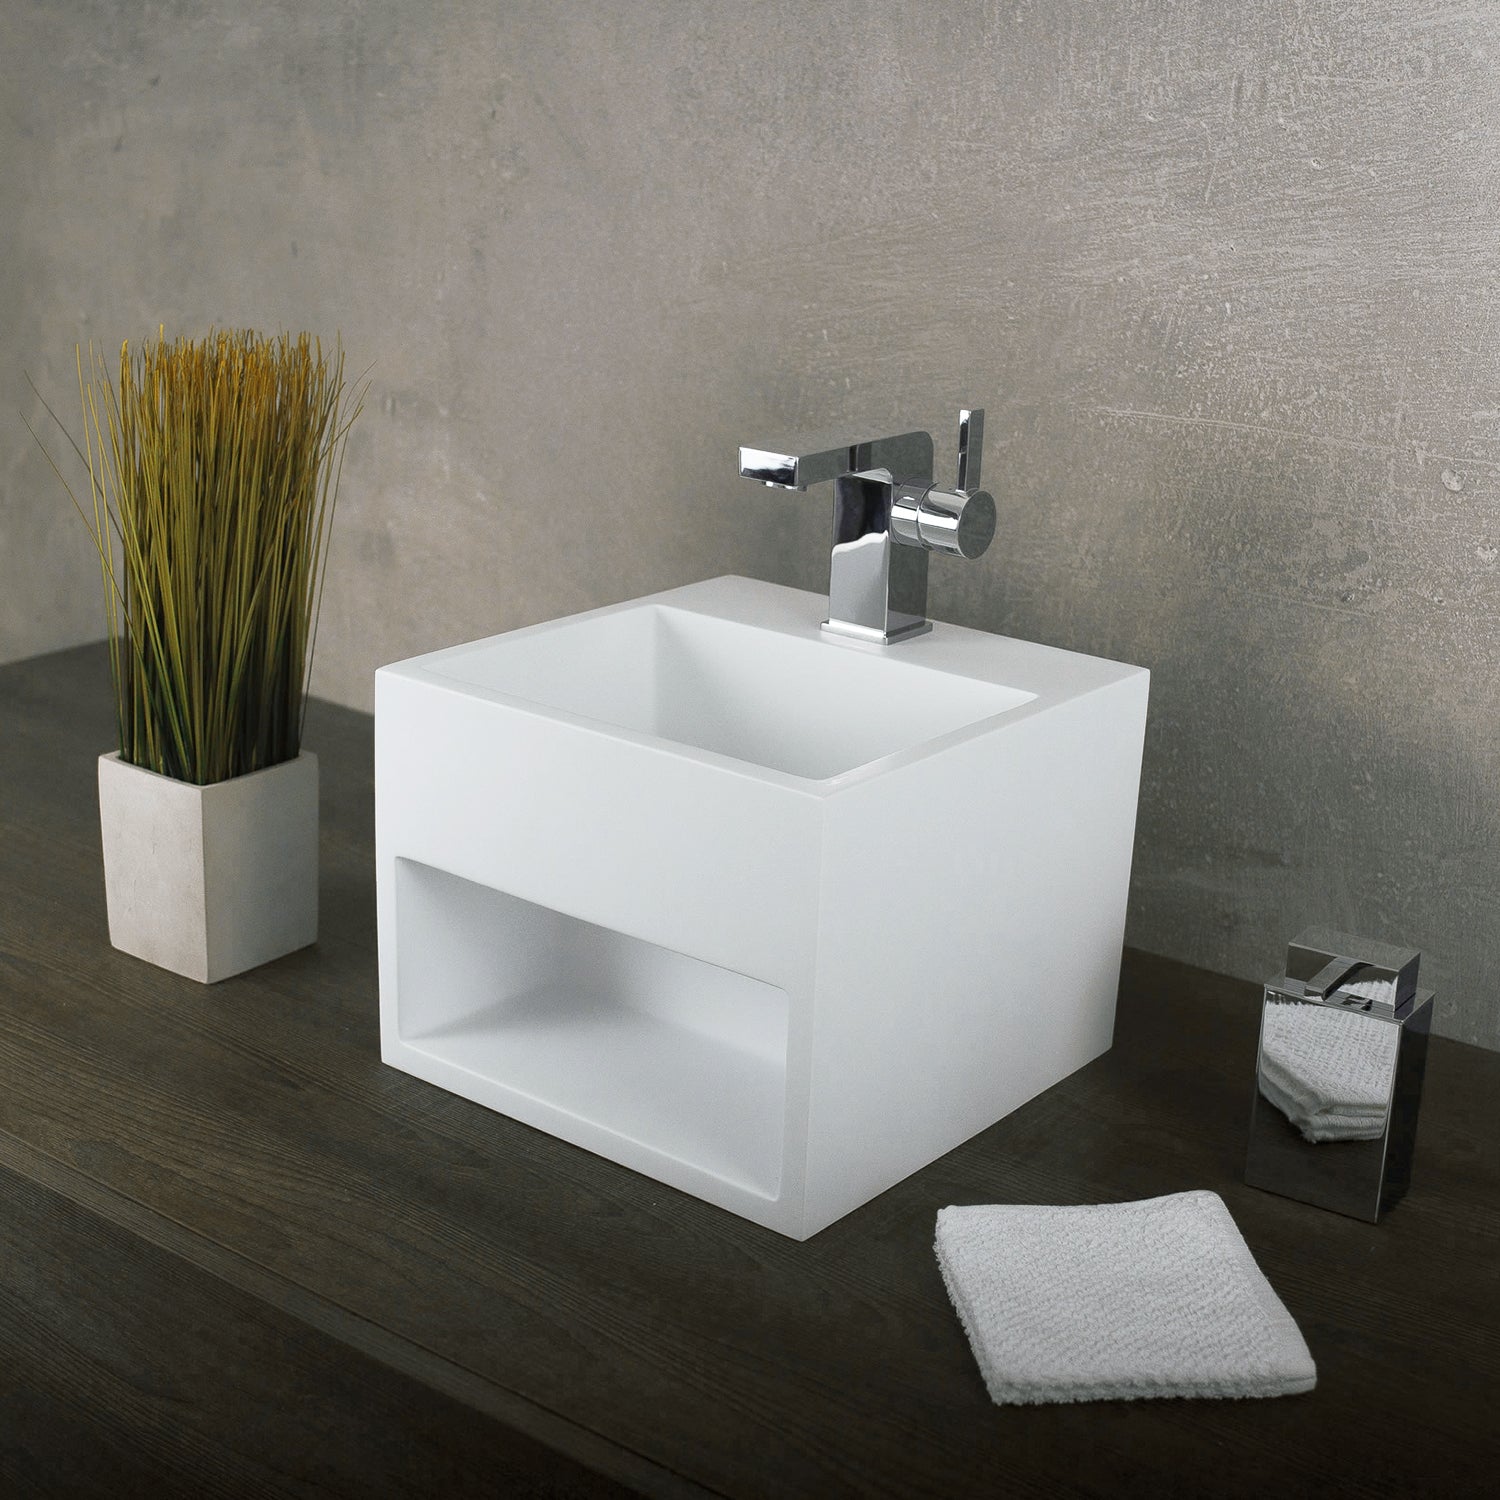 DAX Gabinete para lavabo de baño cuadrado de superficie sólida de un solo tazón, acabado blanco mate, 12-4/5 x 12-4/5 x 9-7/8 pulgadas (DAX-AB-1360)